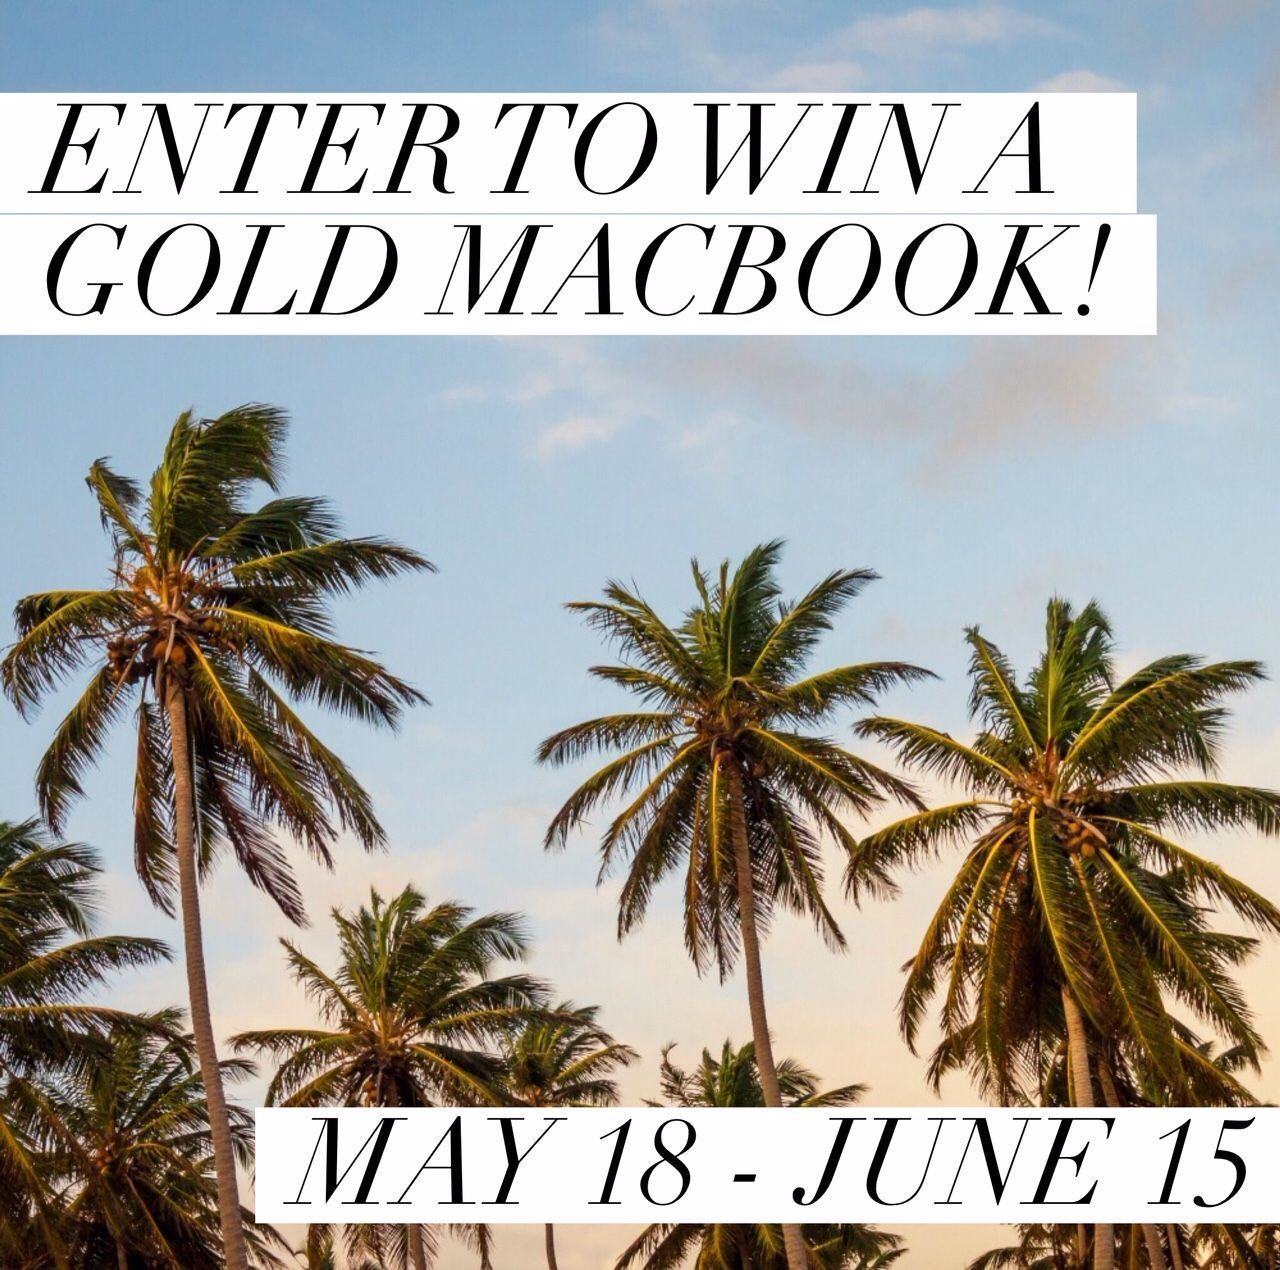 Gold Macbook Giveaway